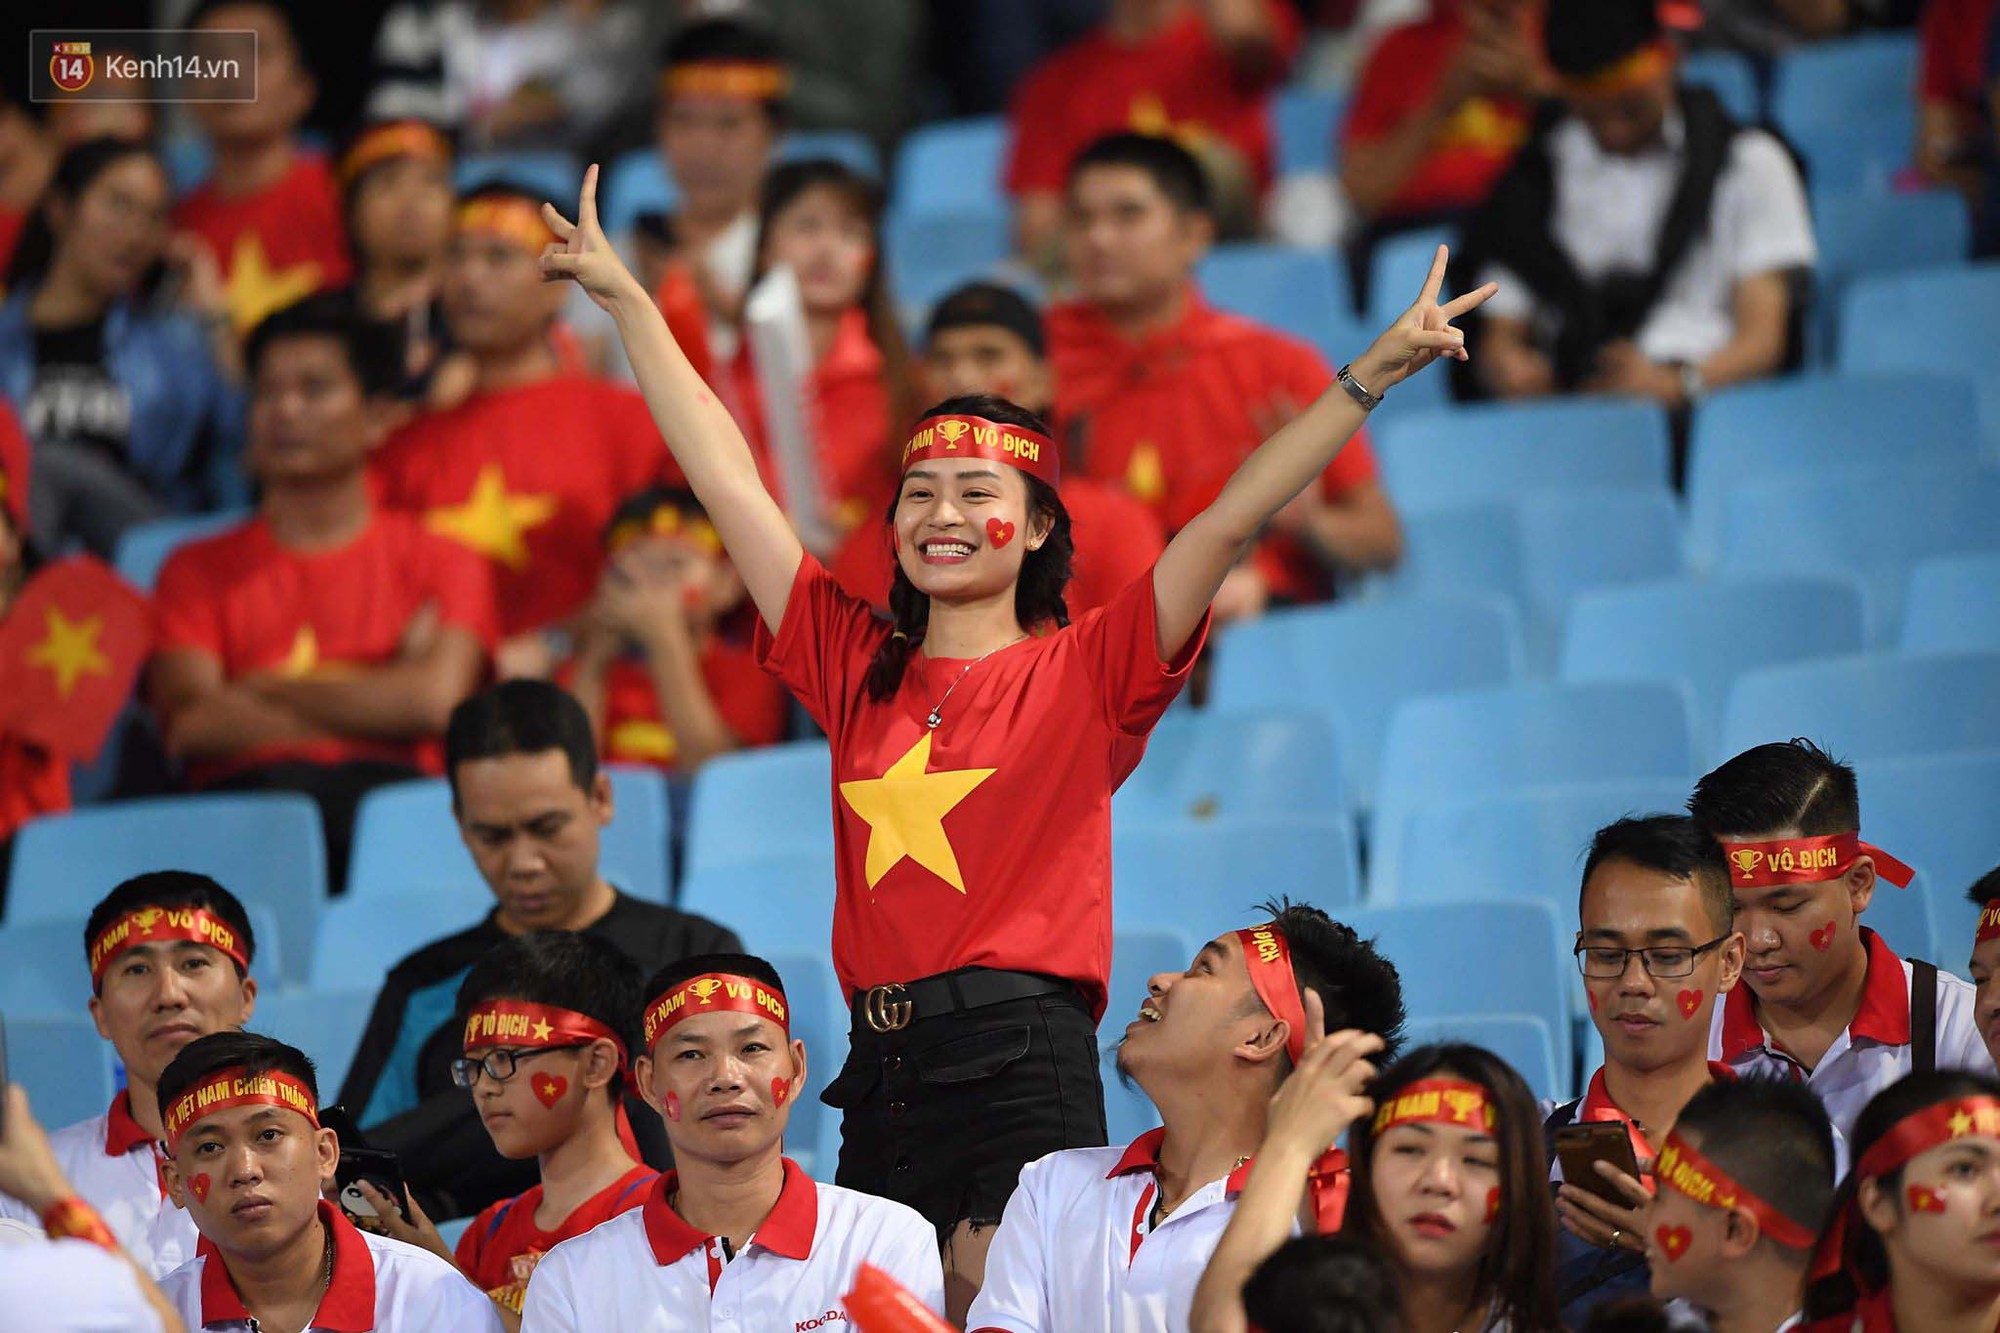 Loạt fan girl xinh xắn chiếm sóng tại Mỹ Đình trước trận bán kết Việt Nam - Philippines-15